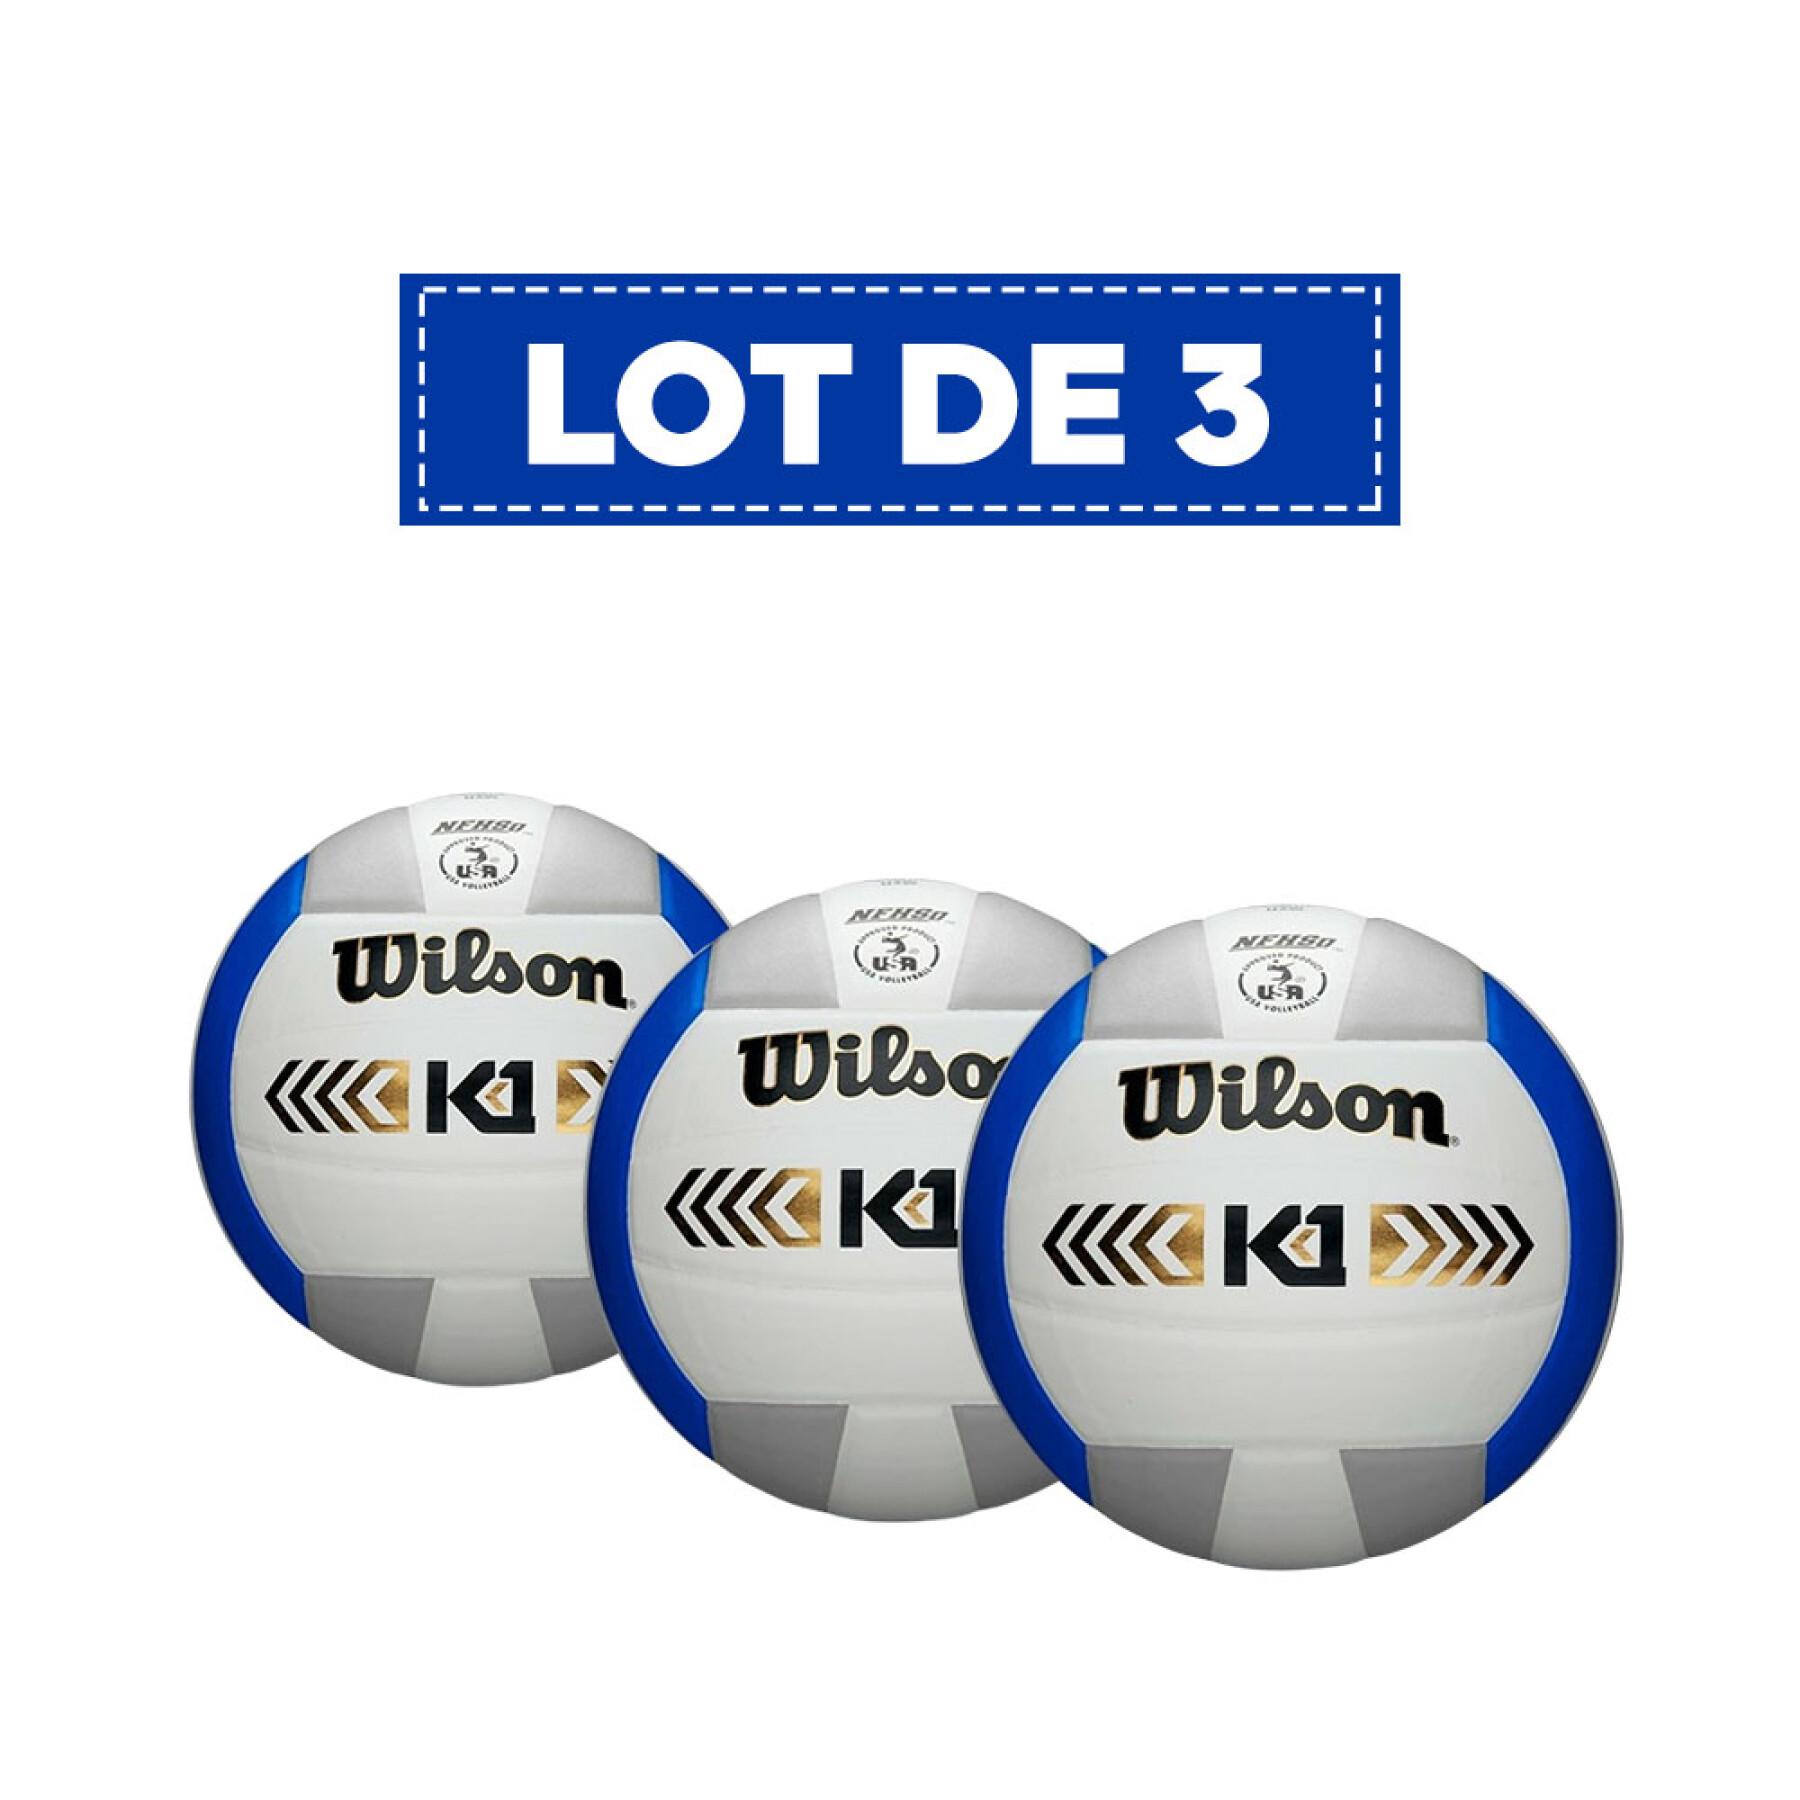 Lot von 3 Volleyballbällen Wilson K1 Gold [Taille 5]